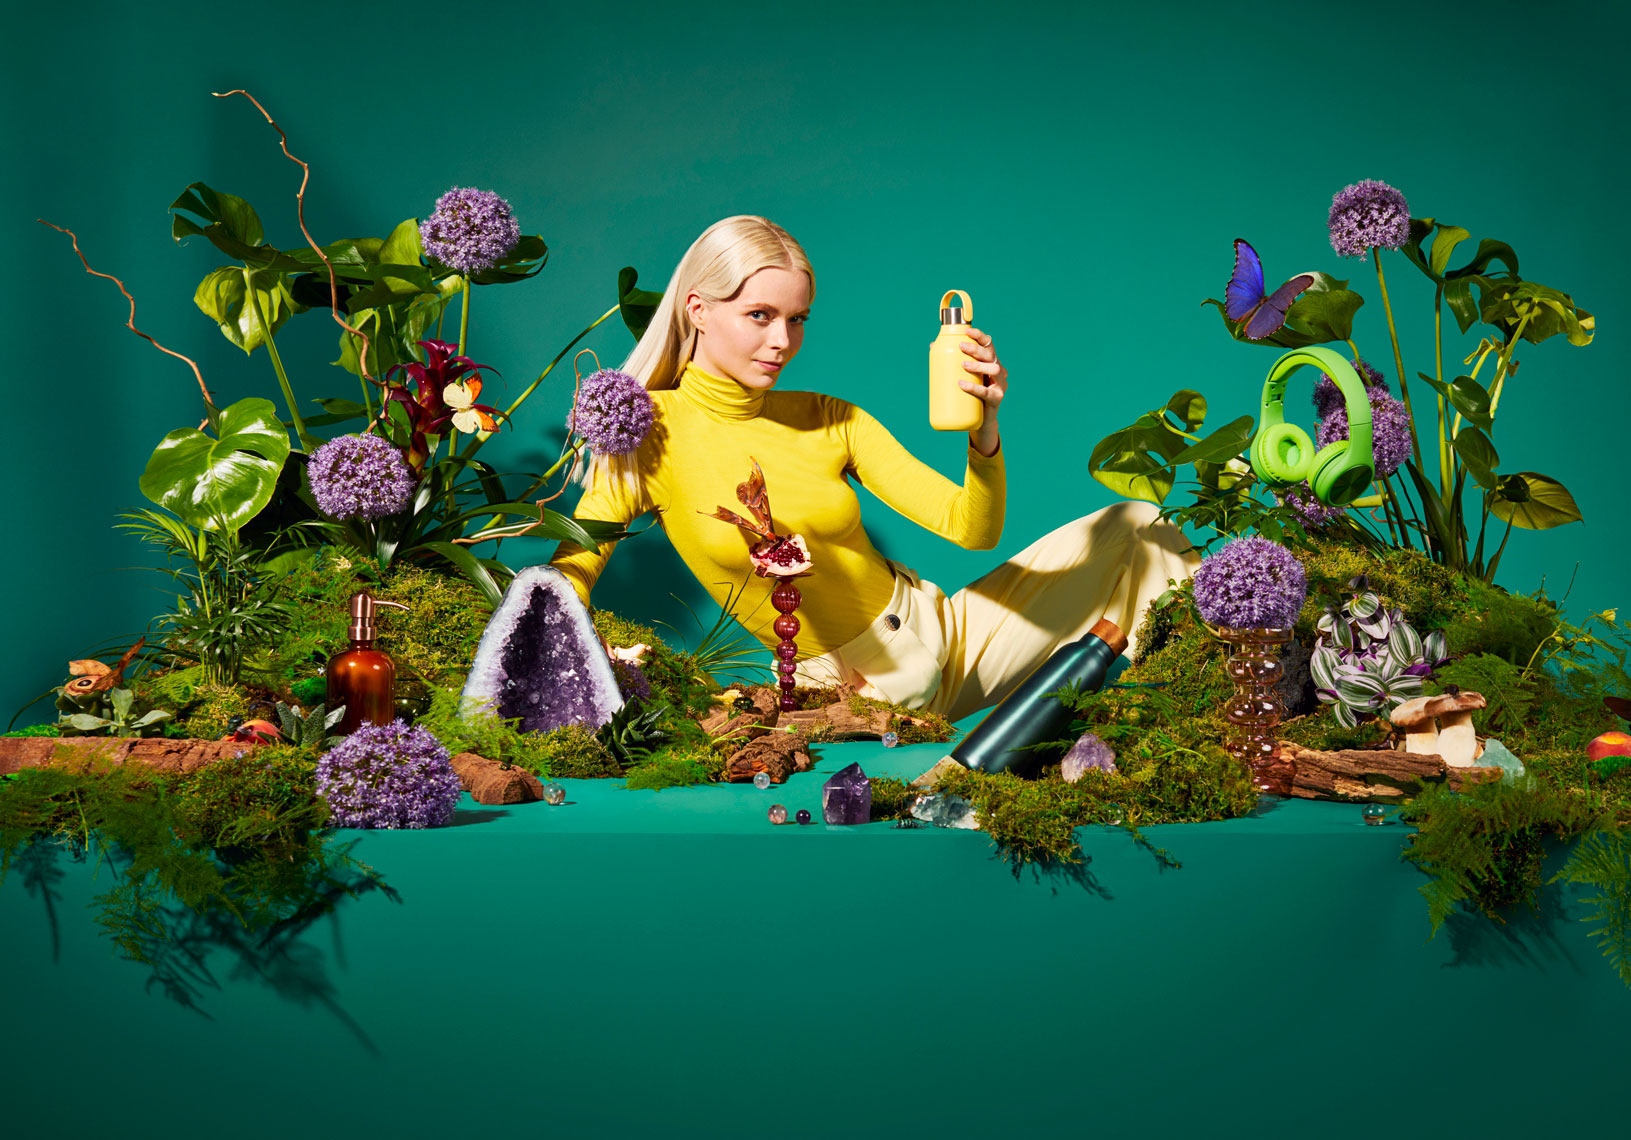 issie-gibbons-fashion-stylist-amazon-launchpad-fantasy-yellow-botanical